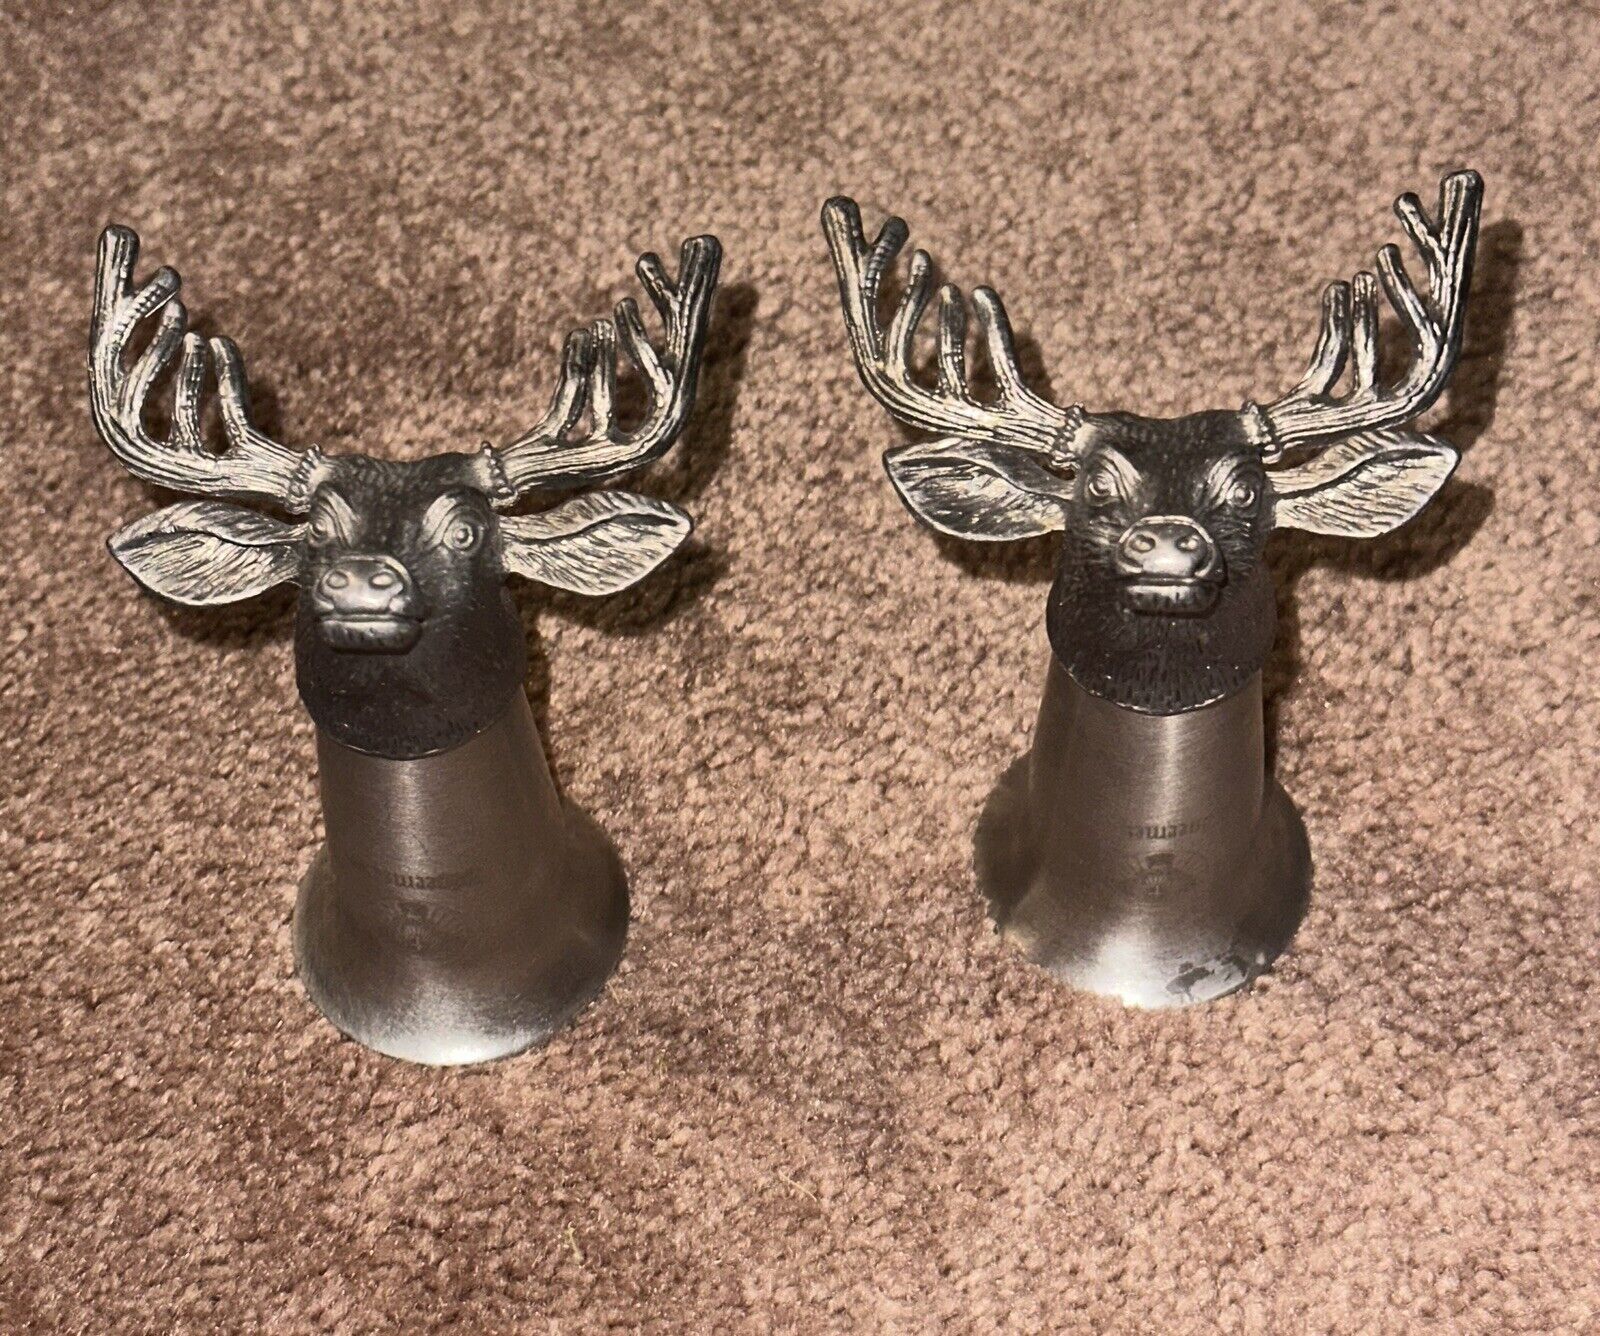 Pair Of Deer Jagermeister Pewter Shooter Stag Deer Buck Head Shot Glass (2 Pack)